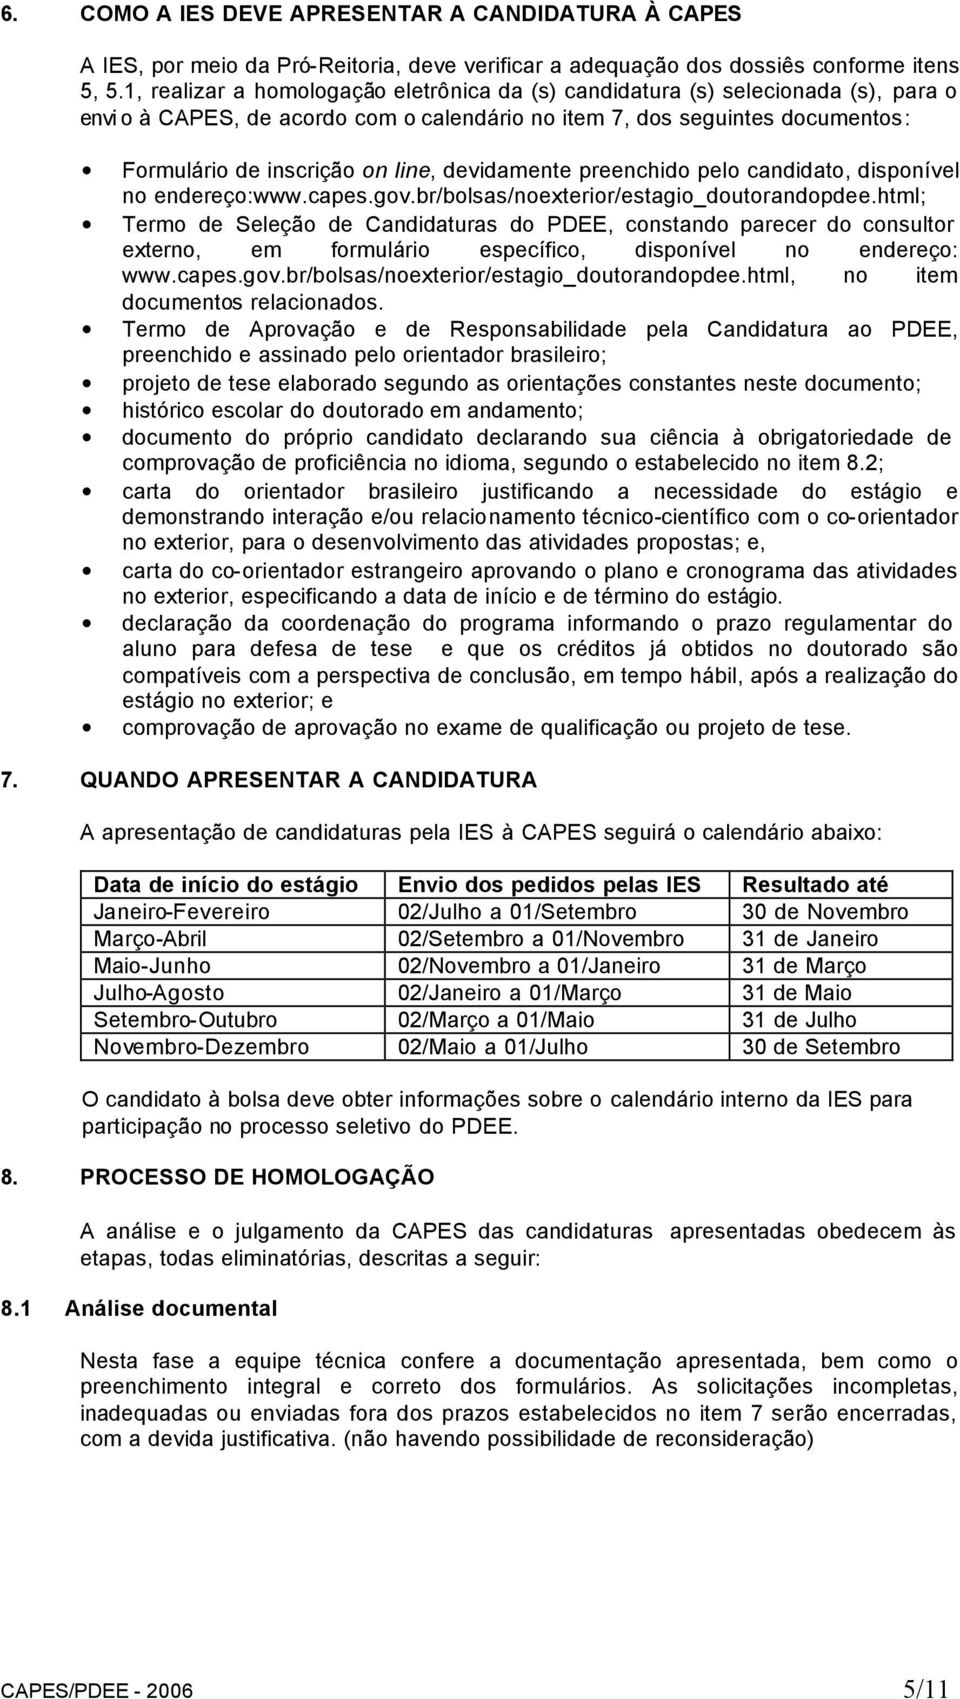 devidamente preenchido pelo candidato, disponível no endereço:www.capes.gov.br/bolsas/noexterior/estagio_doutorandopdee.